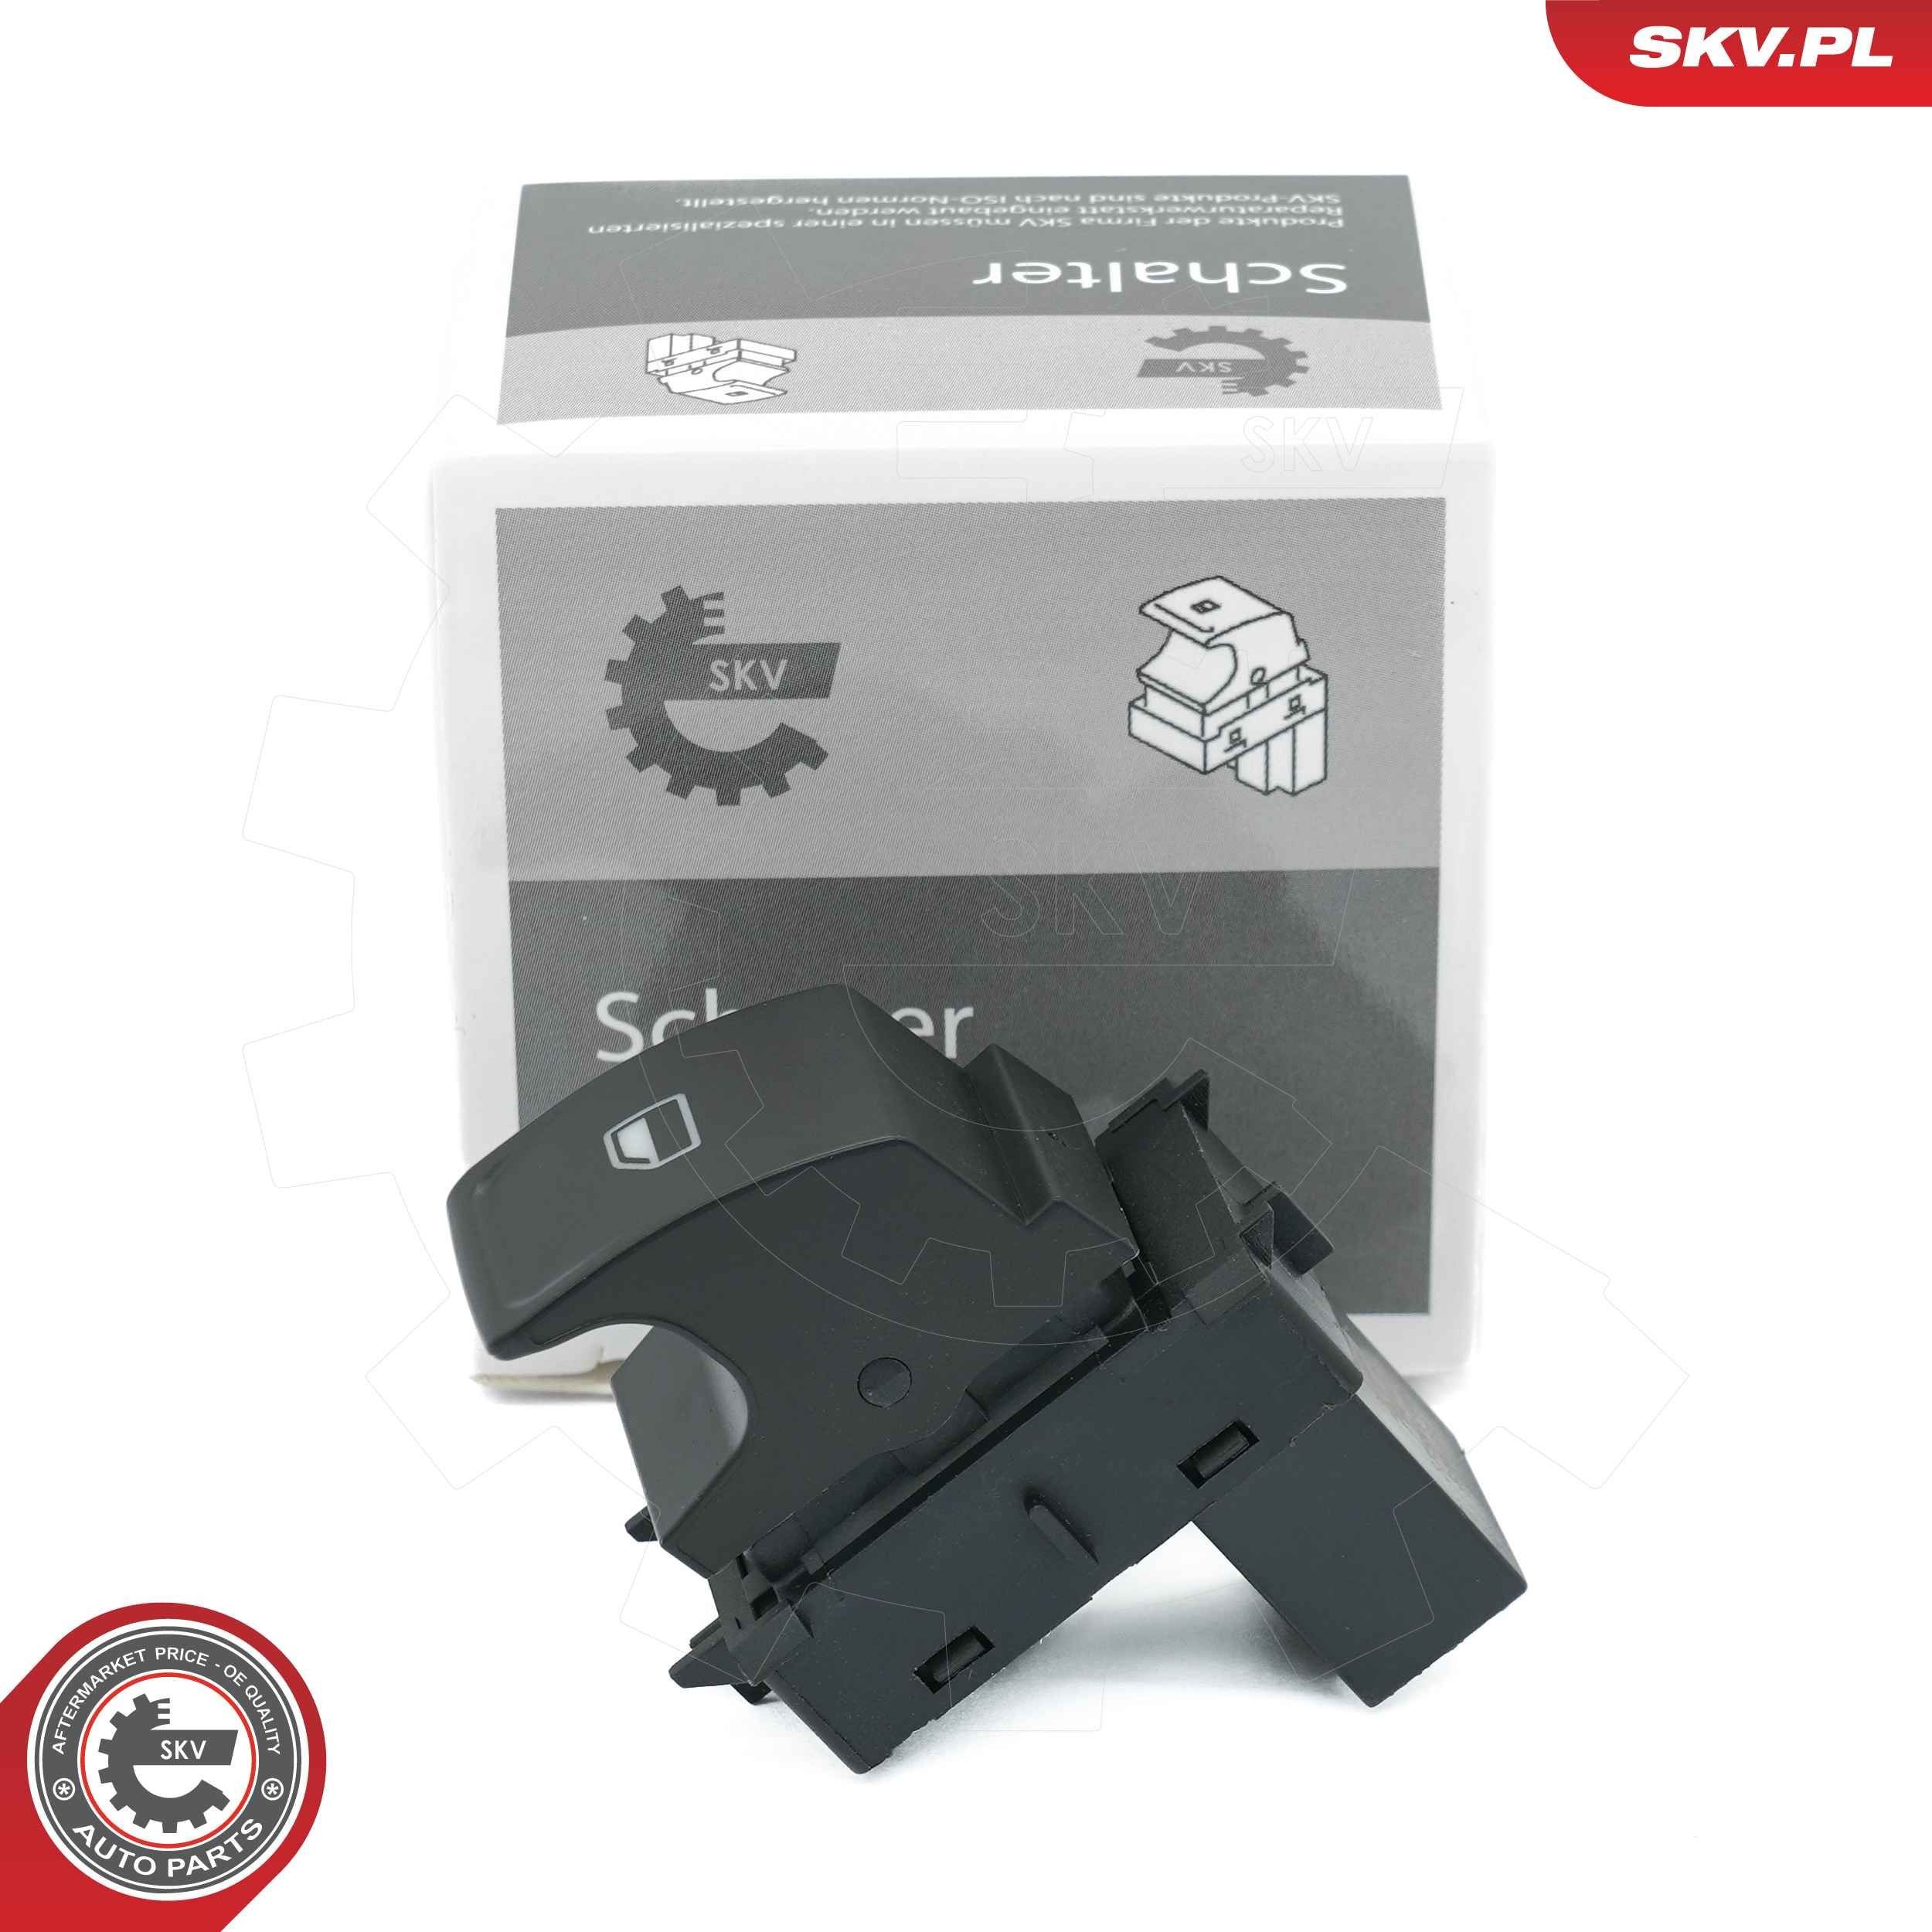 ESEN SKV Vehicle Door Number of pins: 3-pin connector Switch, window regulator 37SKV486 buy